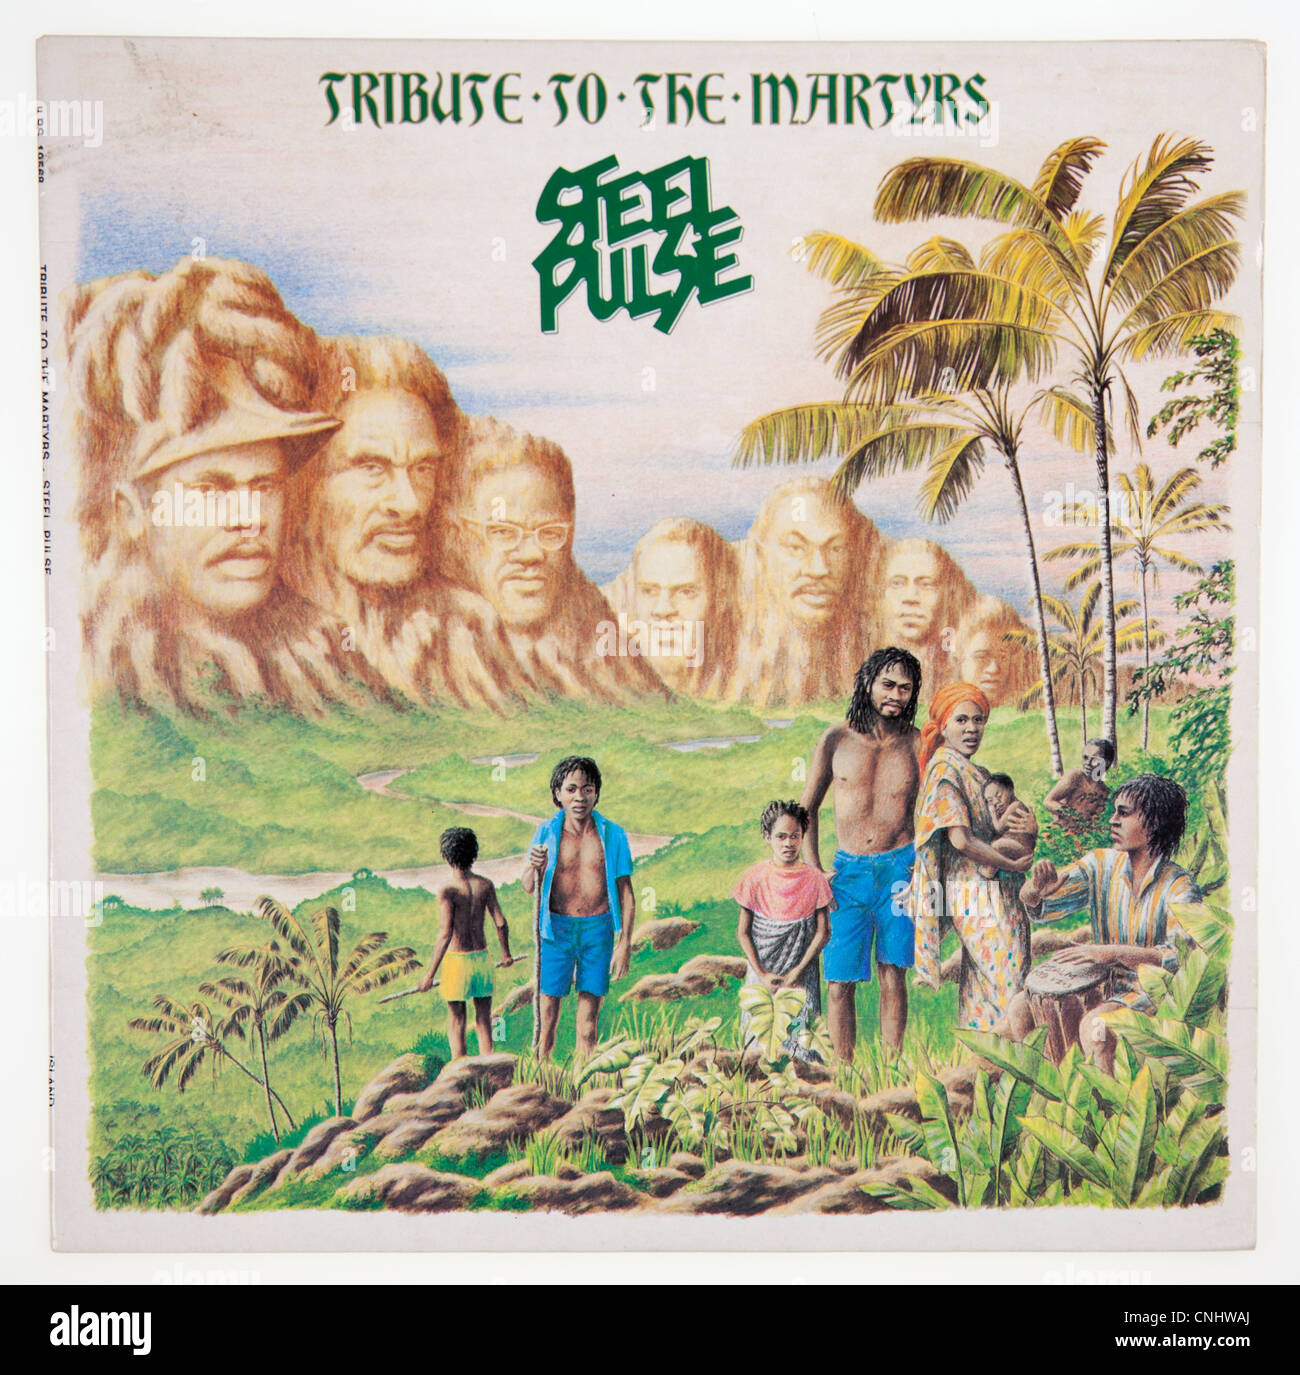 Couverture de l'album vinyle "Hommage à l'Martyrs' par Steel Pulse 1979 parution sur les îles Records Banque D'Images